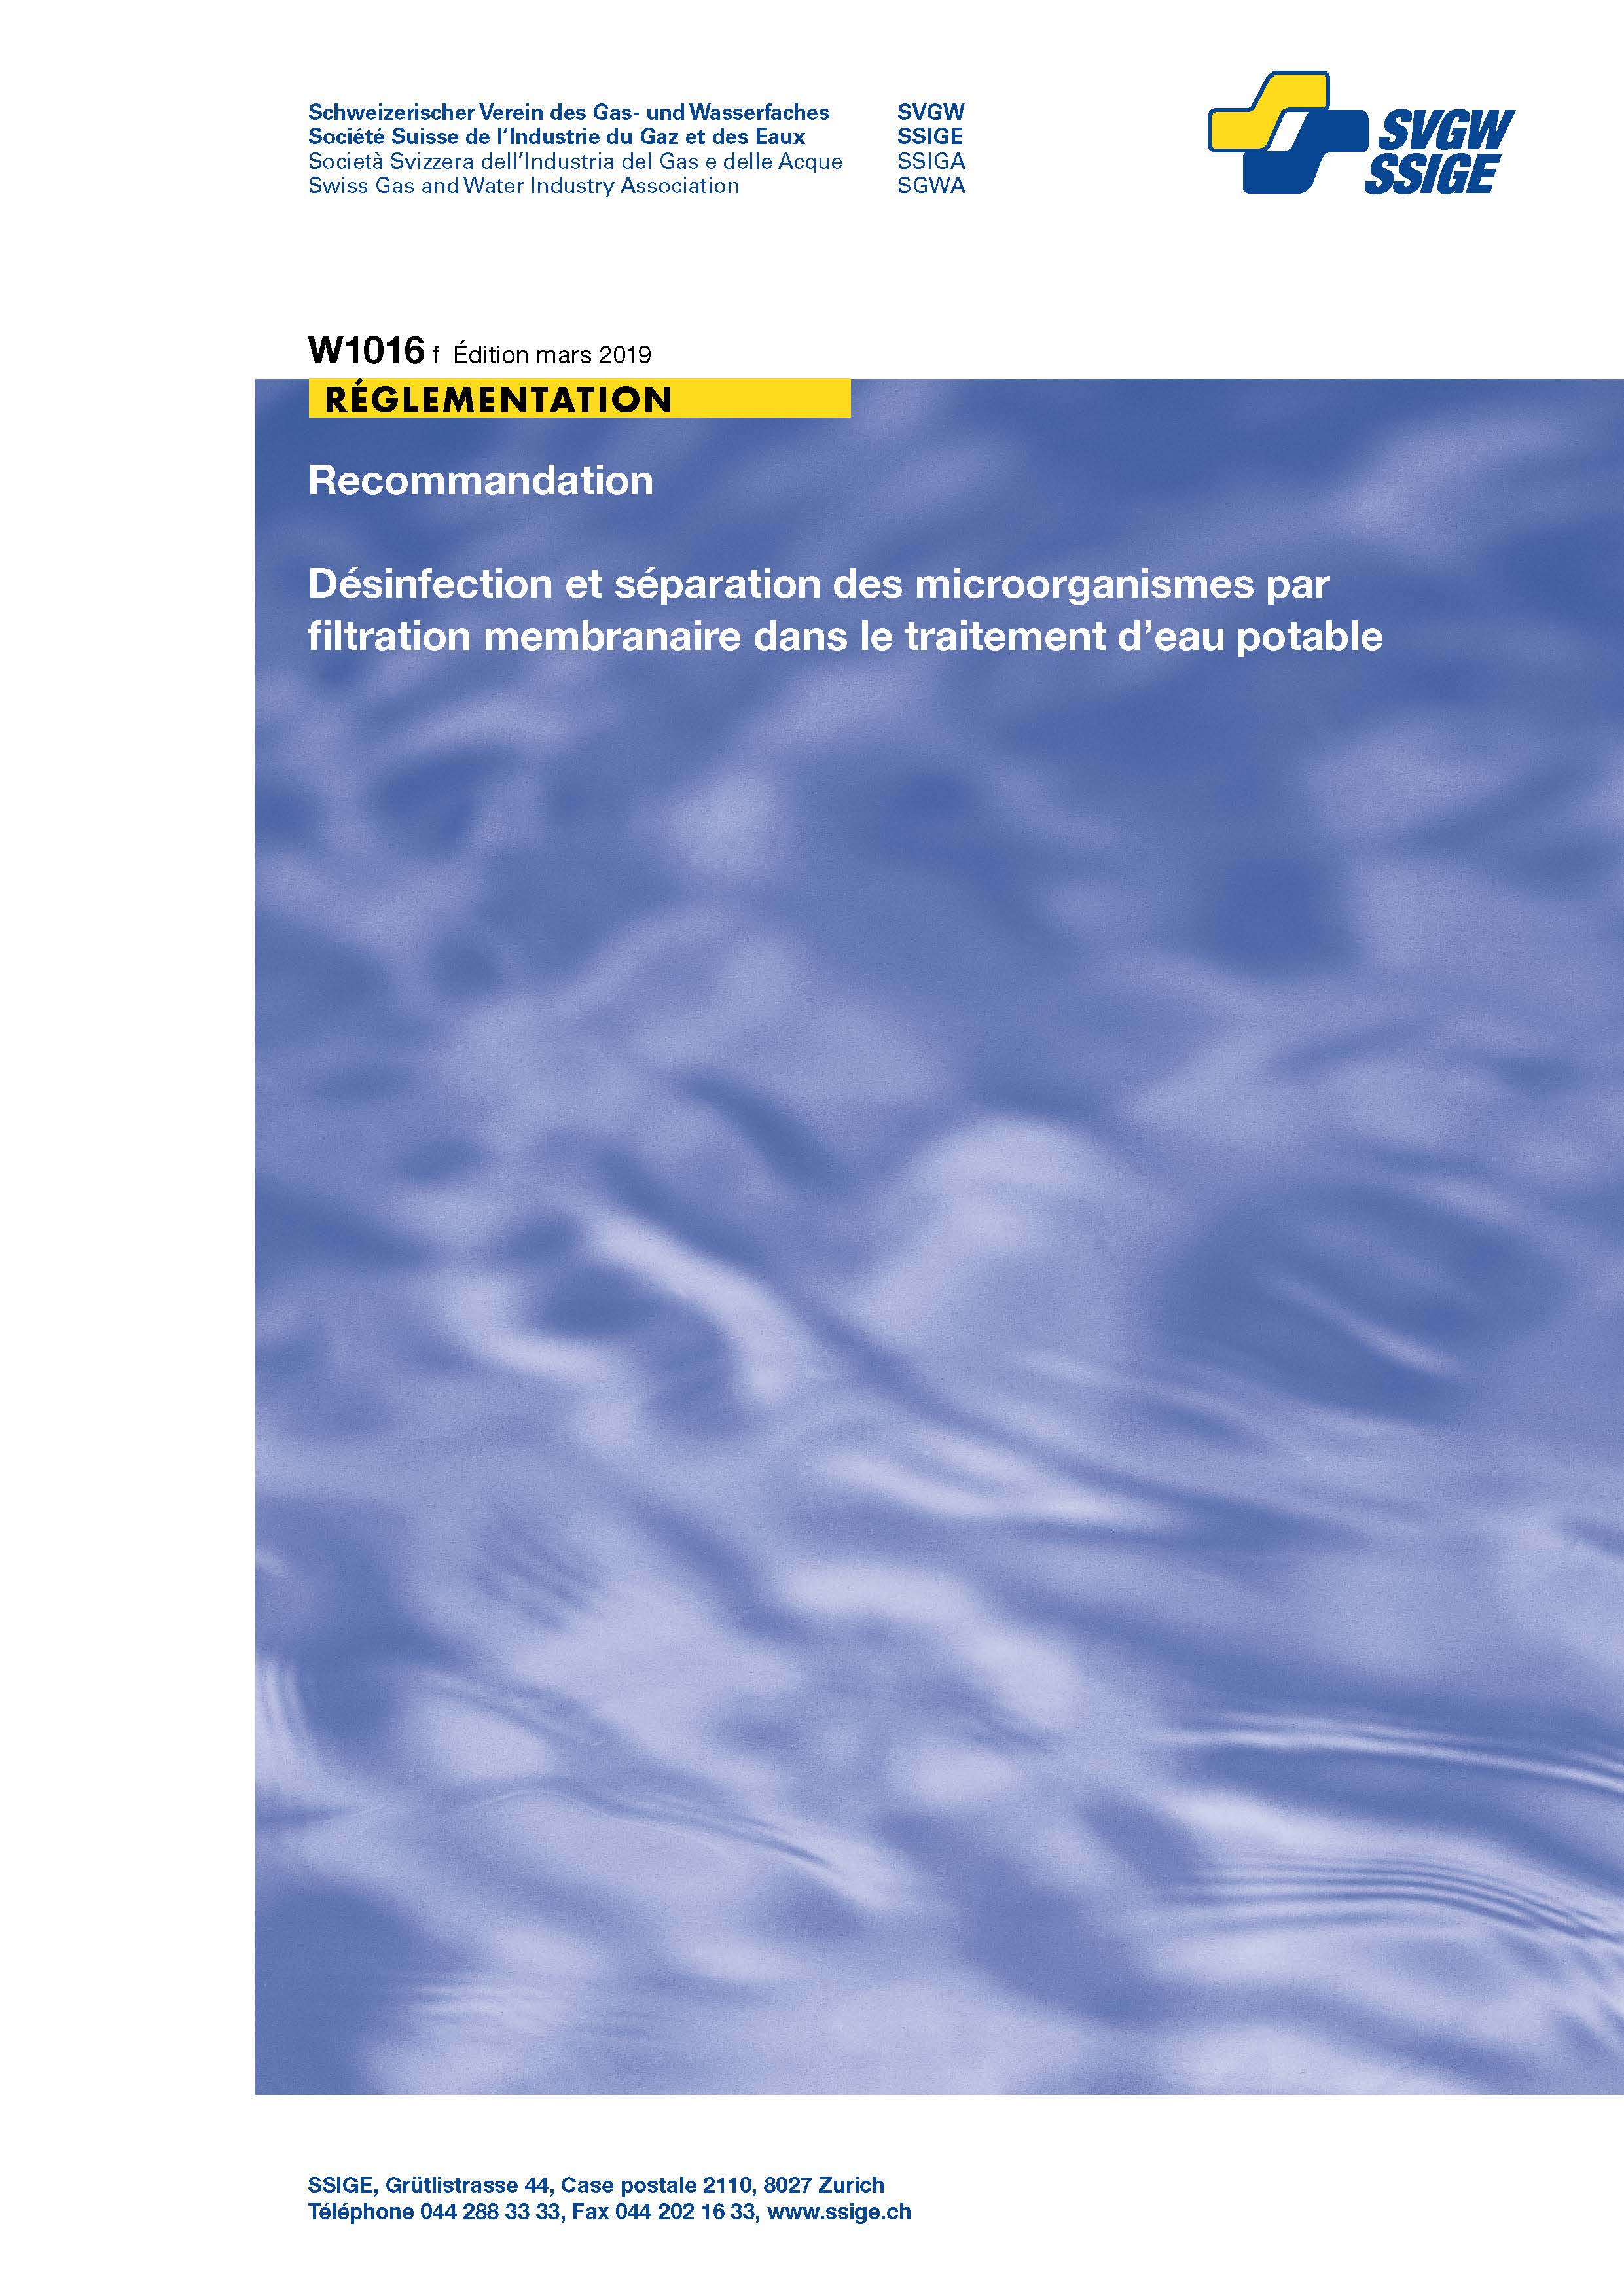 W1016 f Recommandation; Désinfection et séparation des microorganismes par filtration membranaire dans le traitement d'eau potable